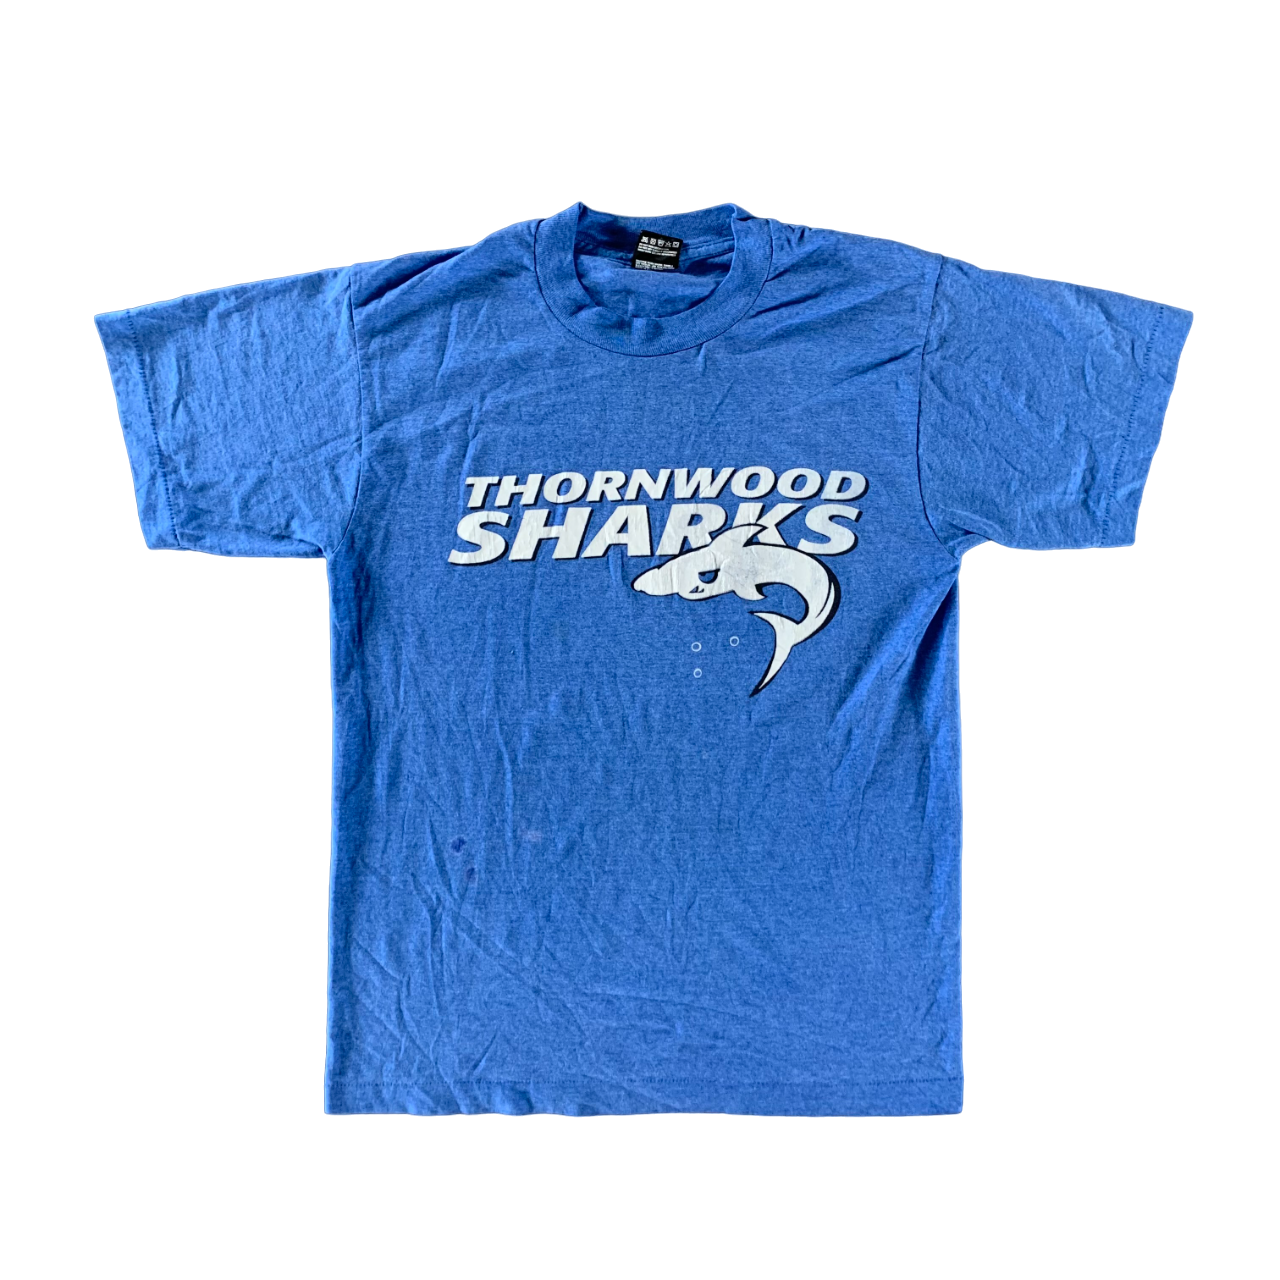 Vintage 1990s Thornwood Sharks T-shirt size Medium